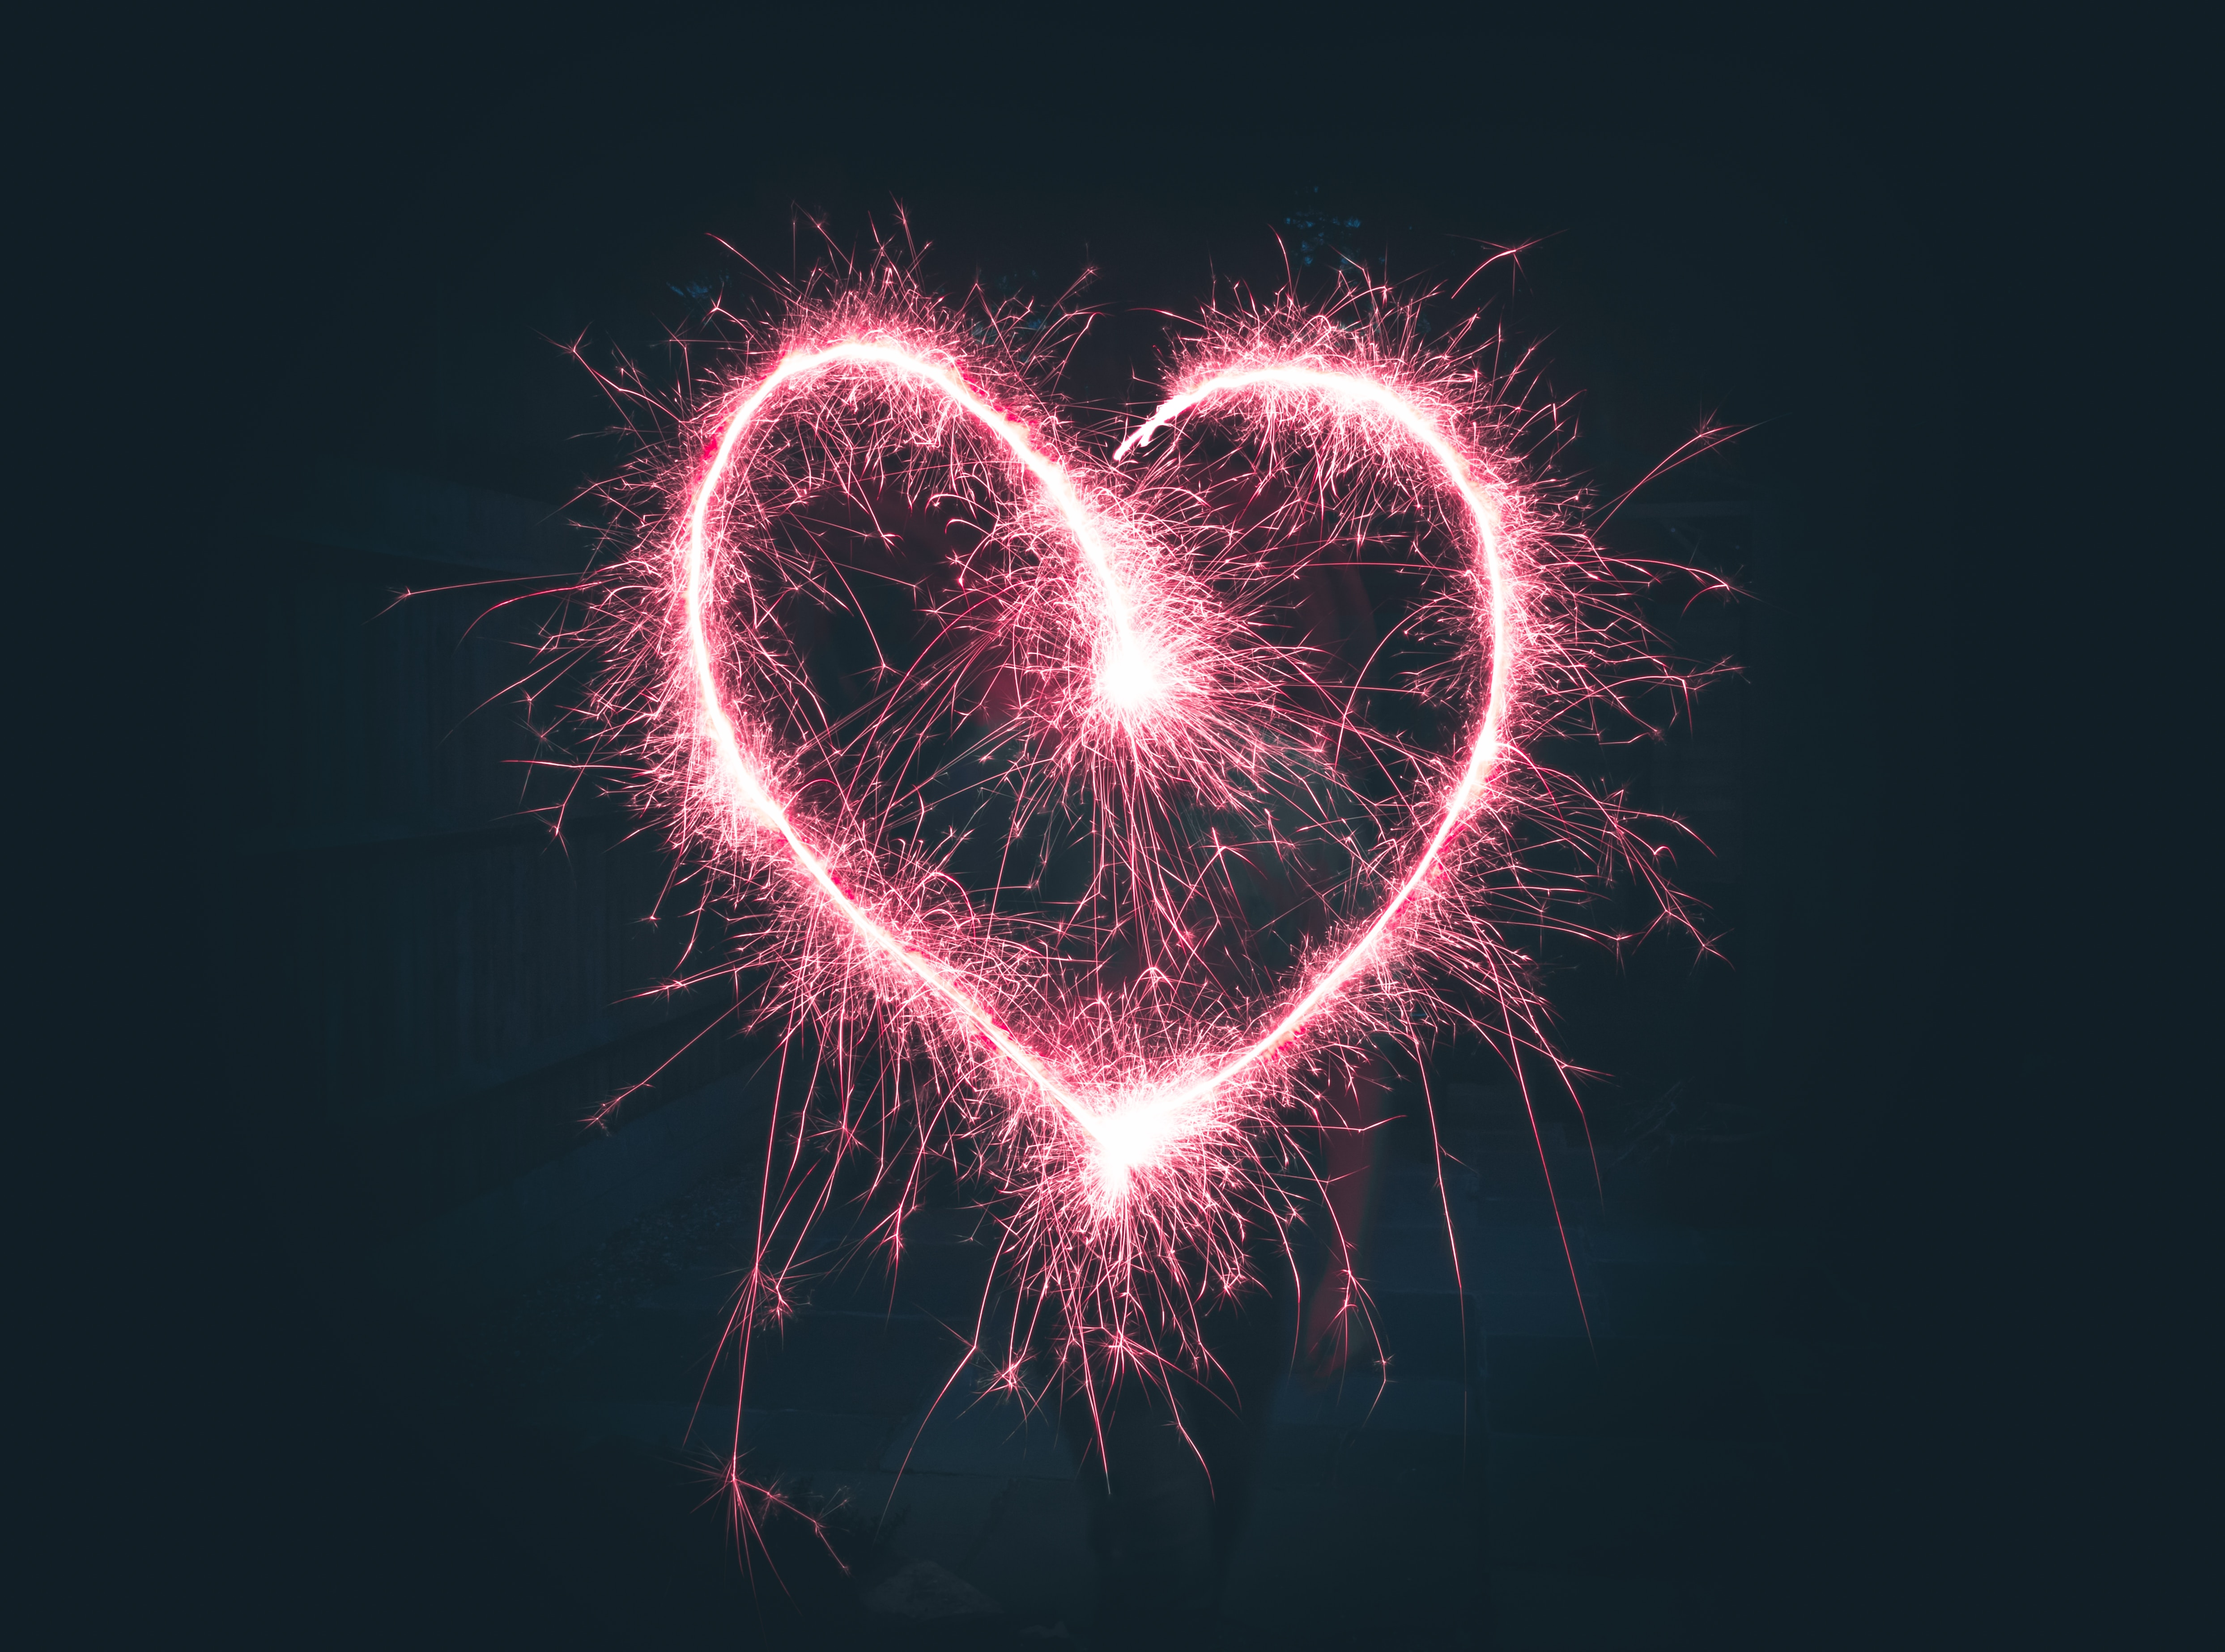 Fireworks in shape of heart